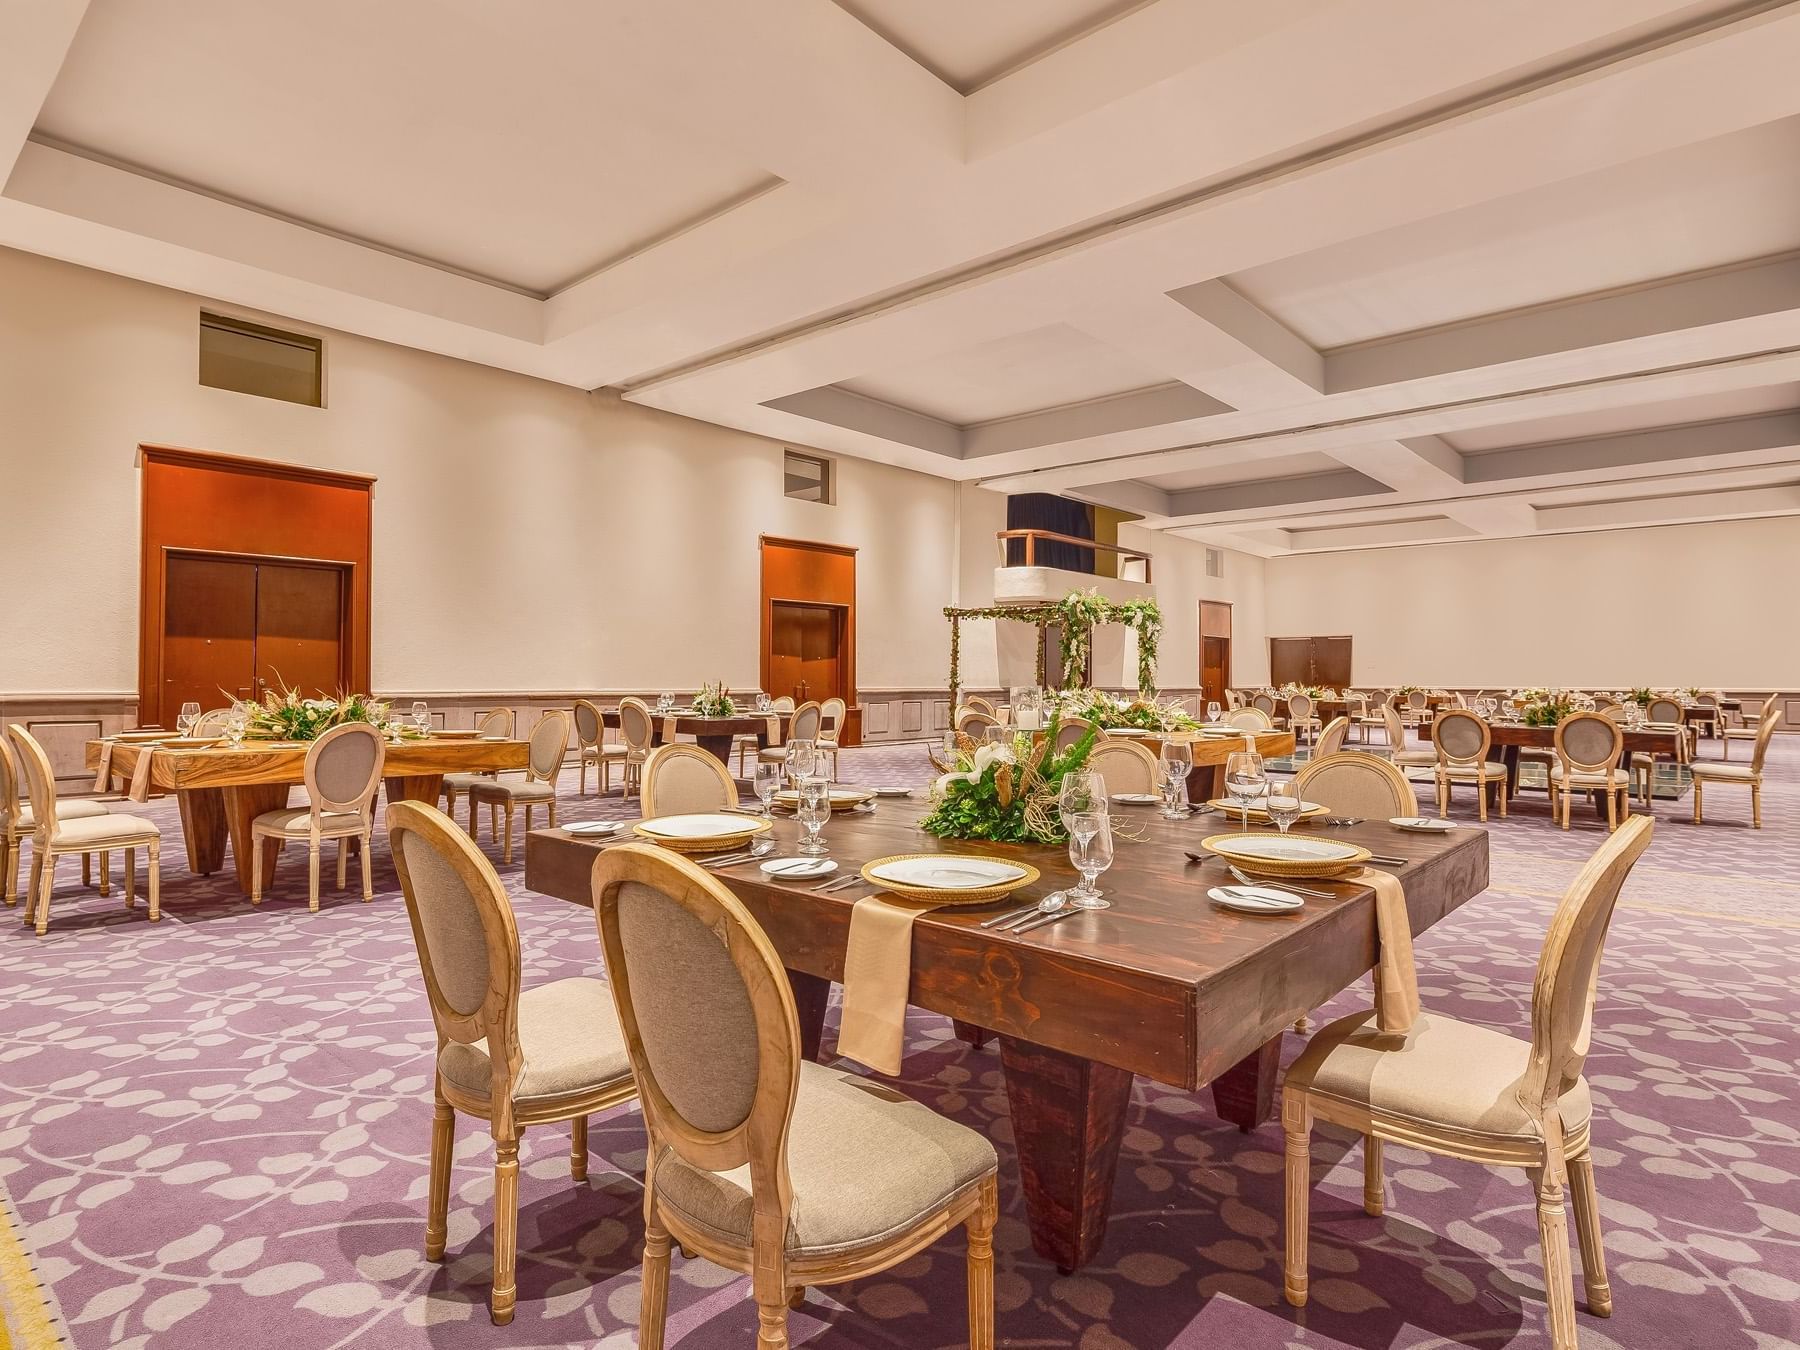 Banquet tables arranged for a wedding at La Colección Resorts